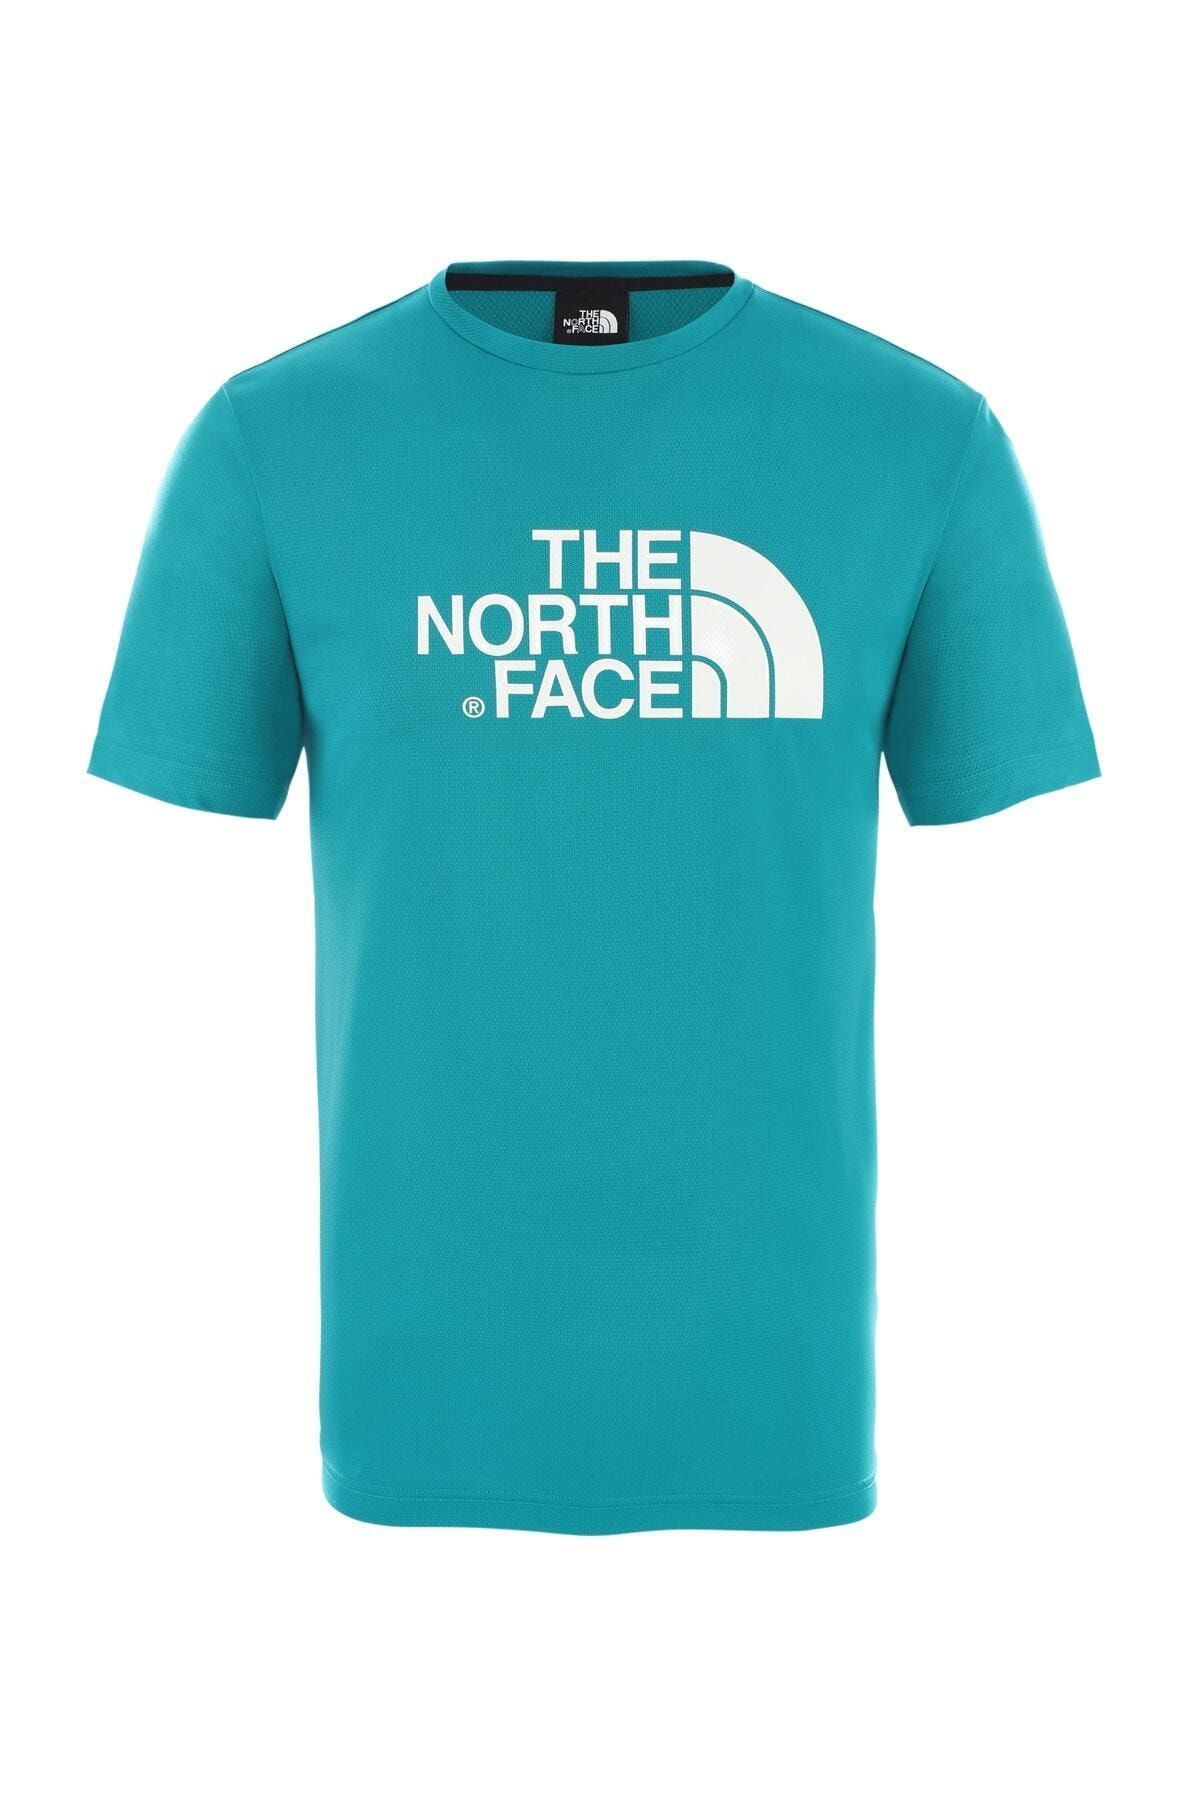 The North Face Tanken Tee Erkek Outdoor T-shirt Fanfare Green